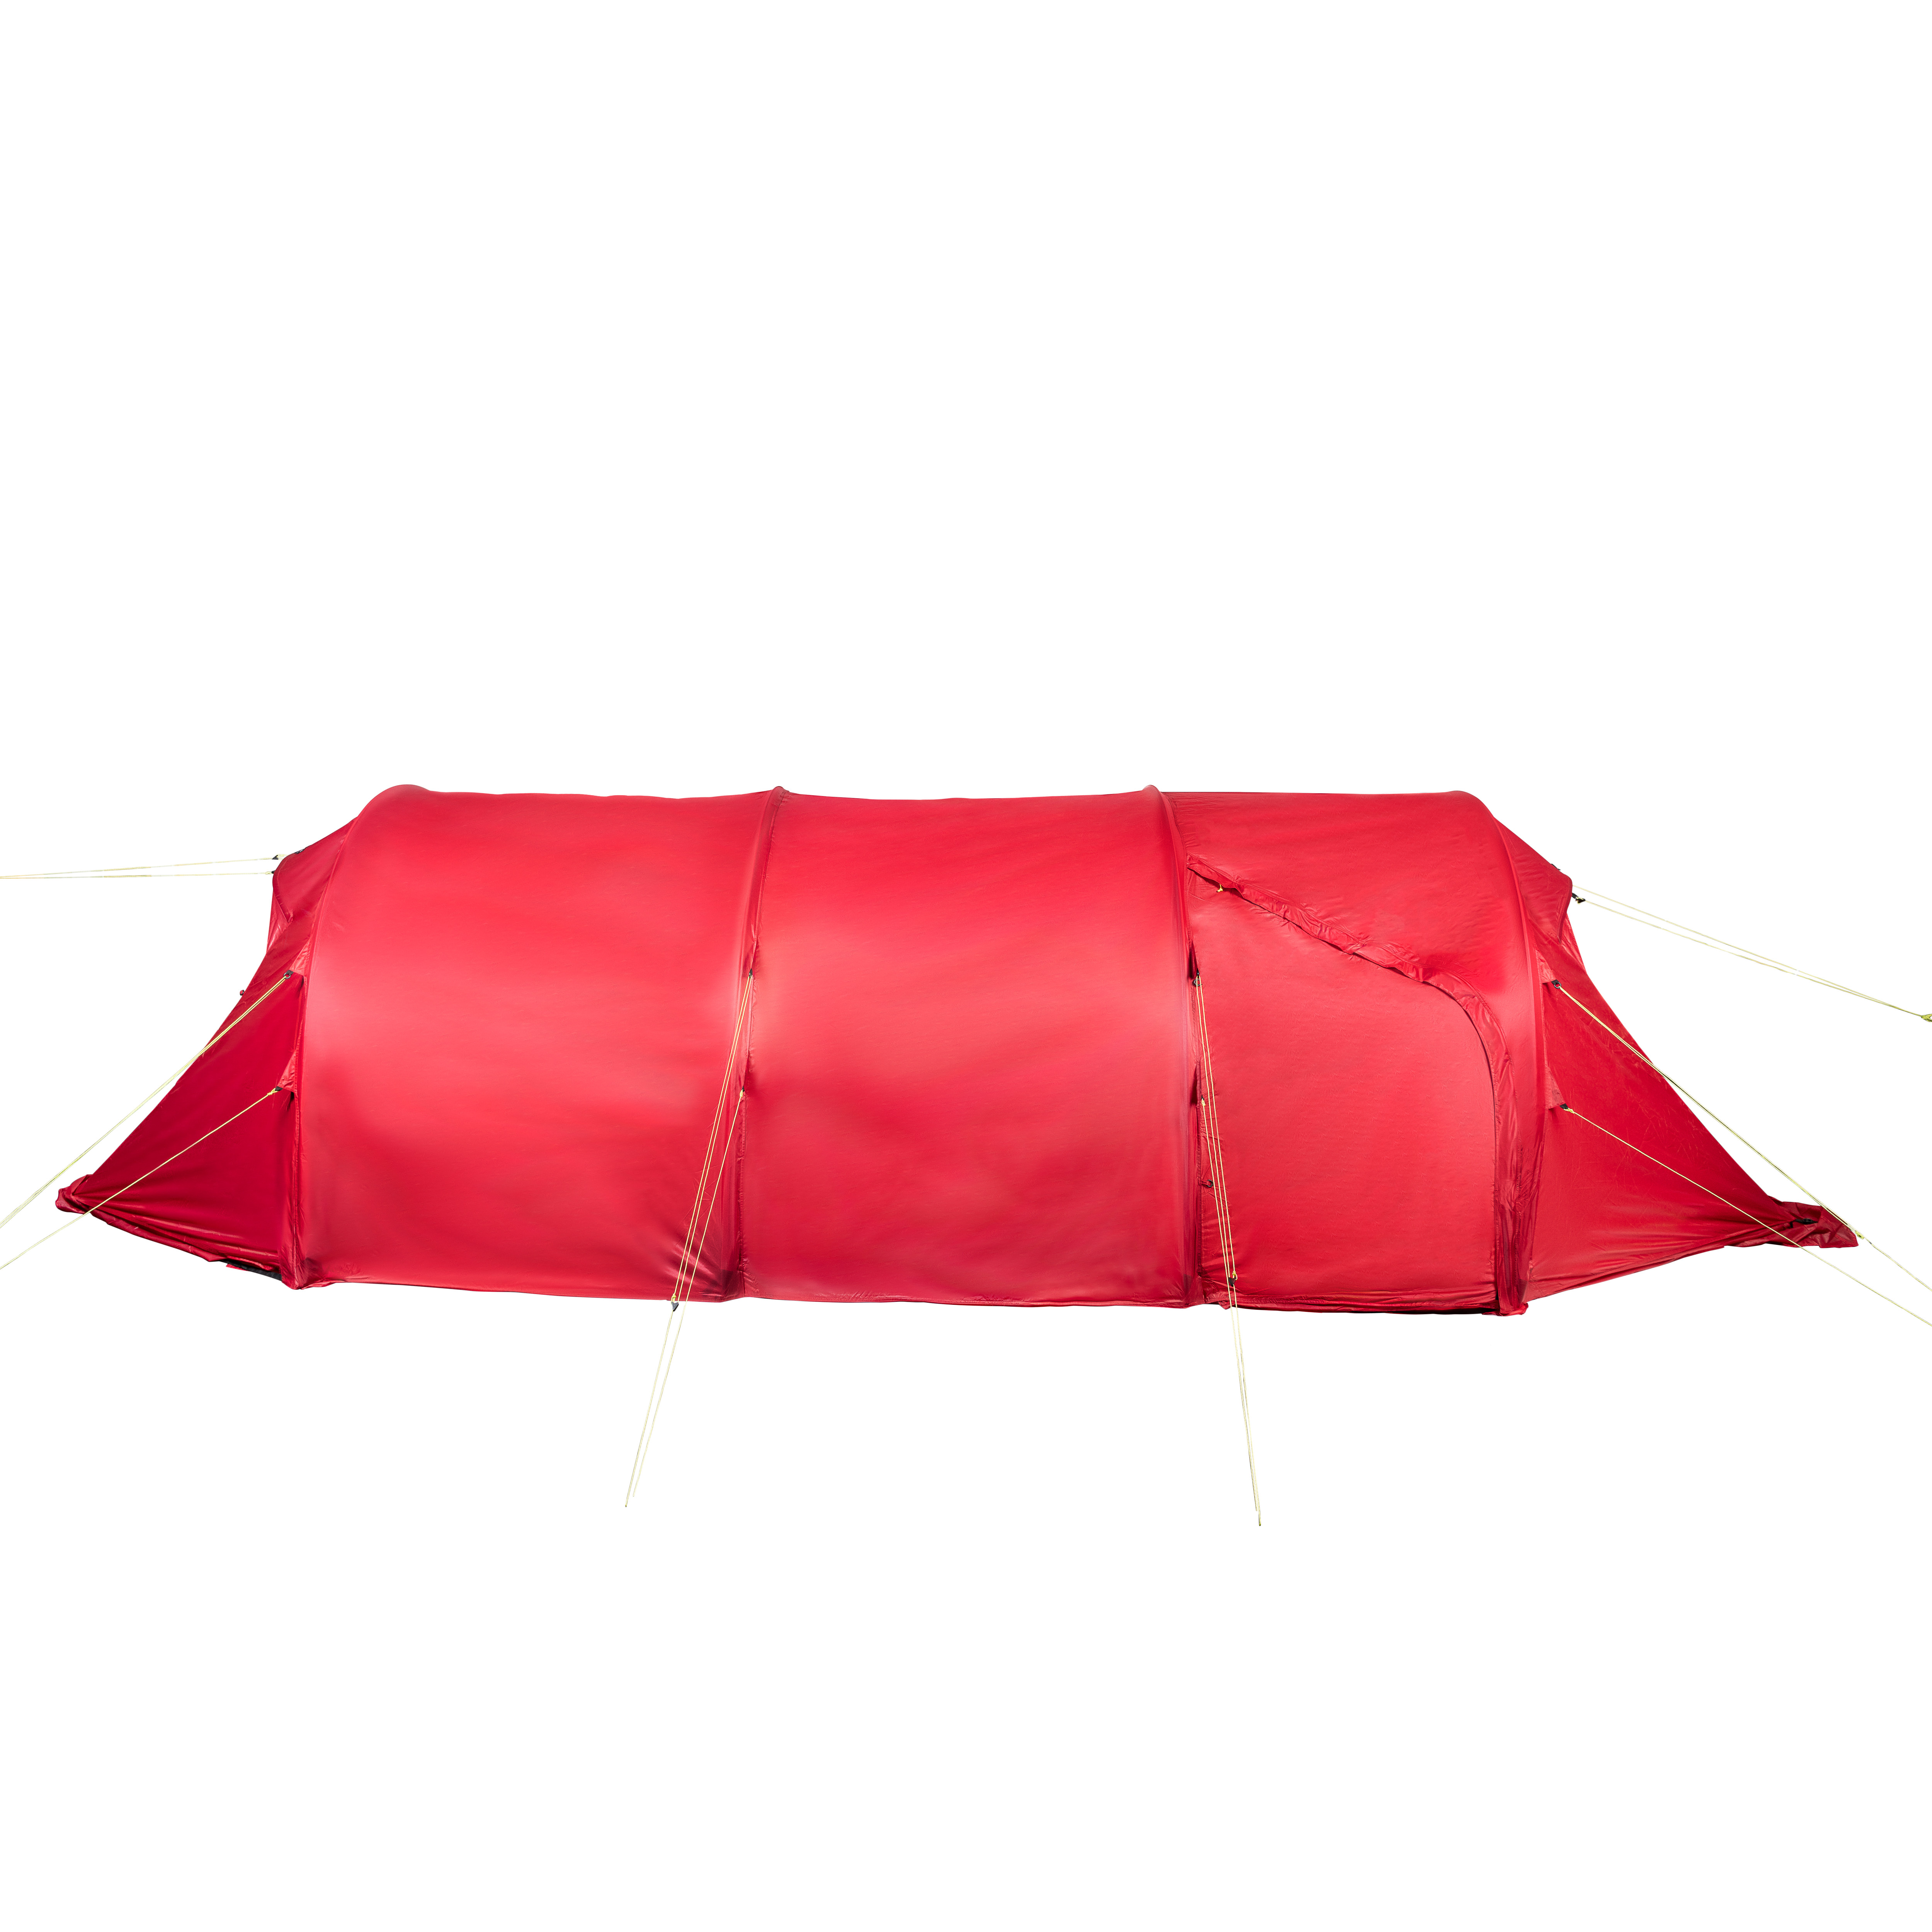 Sydvang Skaring 4 Season Tent Haute Red